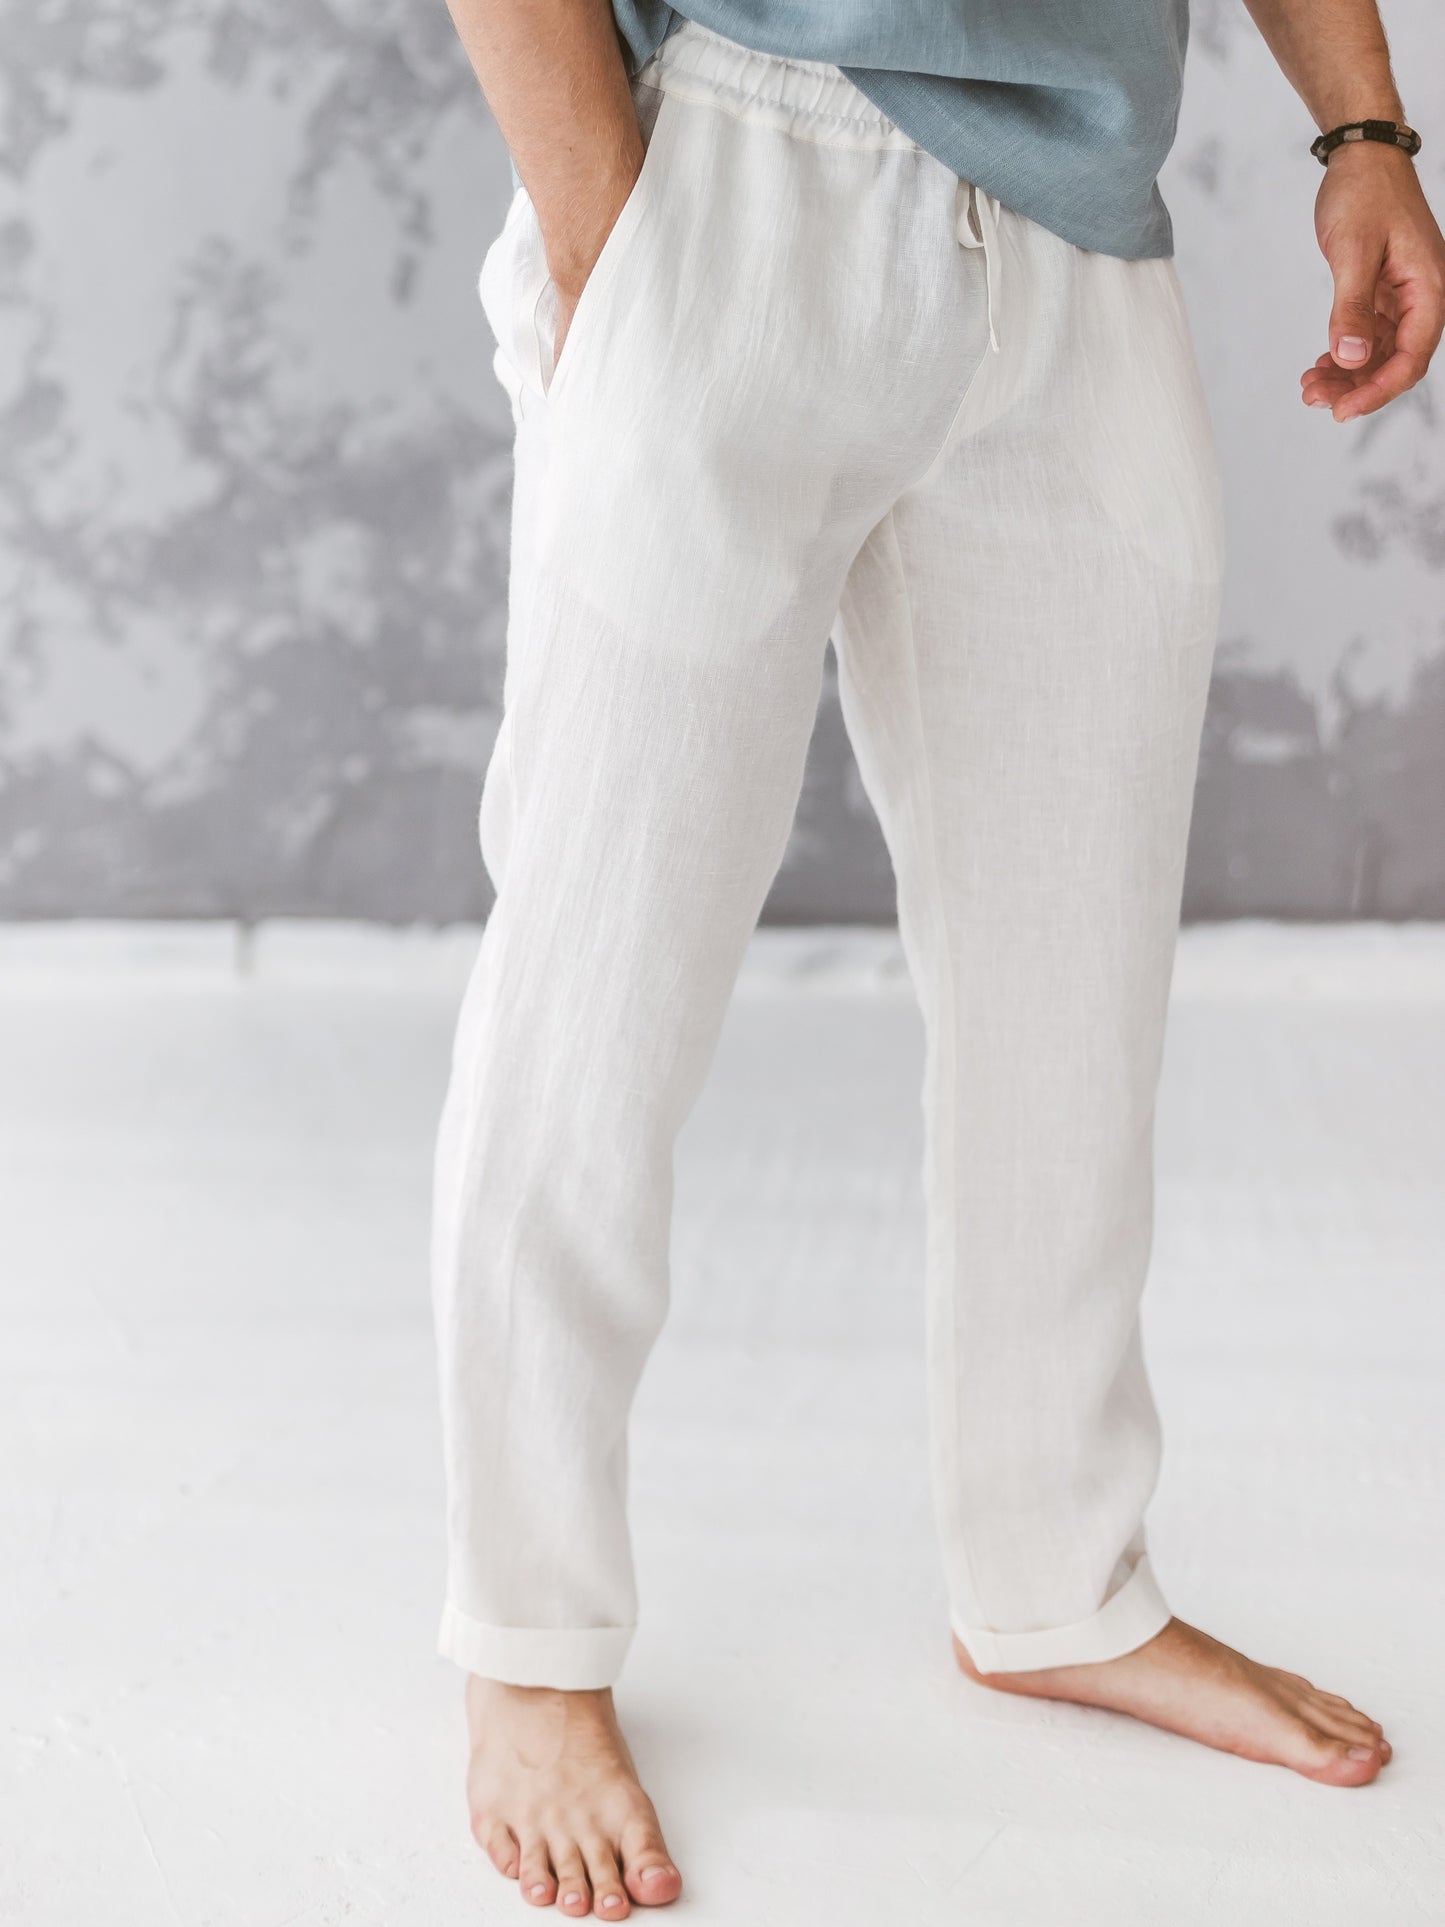 Men's linen pants